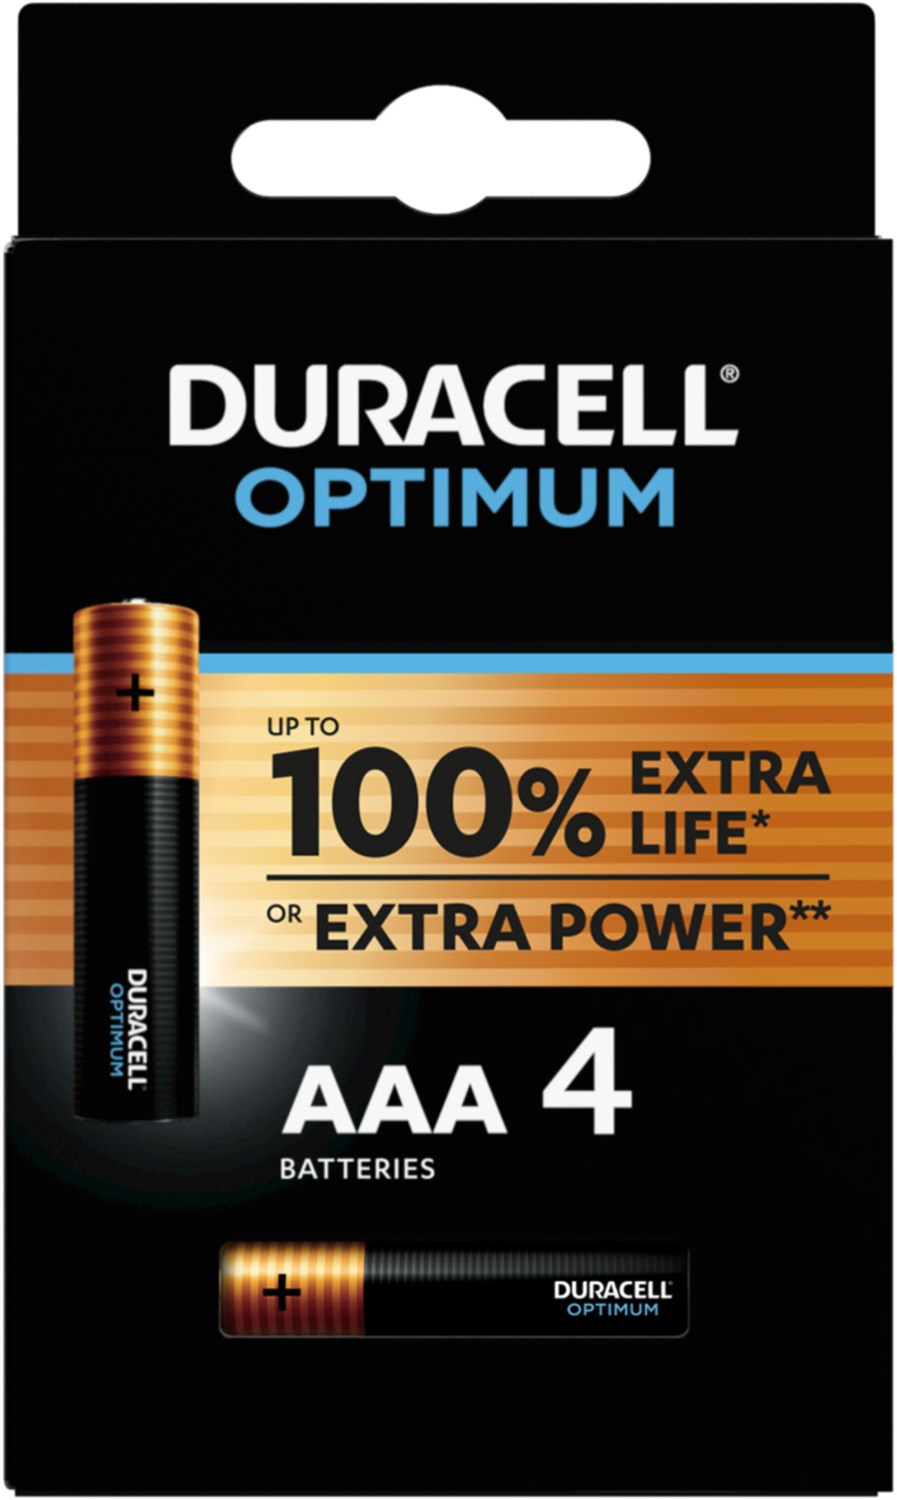 Duracell MN 2400 Optimum AAA 4er Blister (00192926) kaufen bei hifiboehm